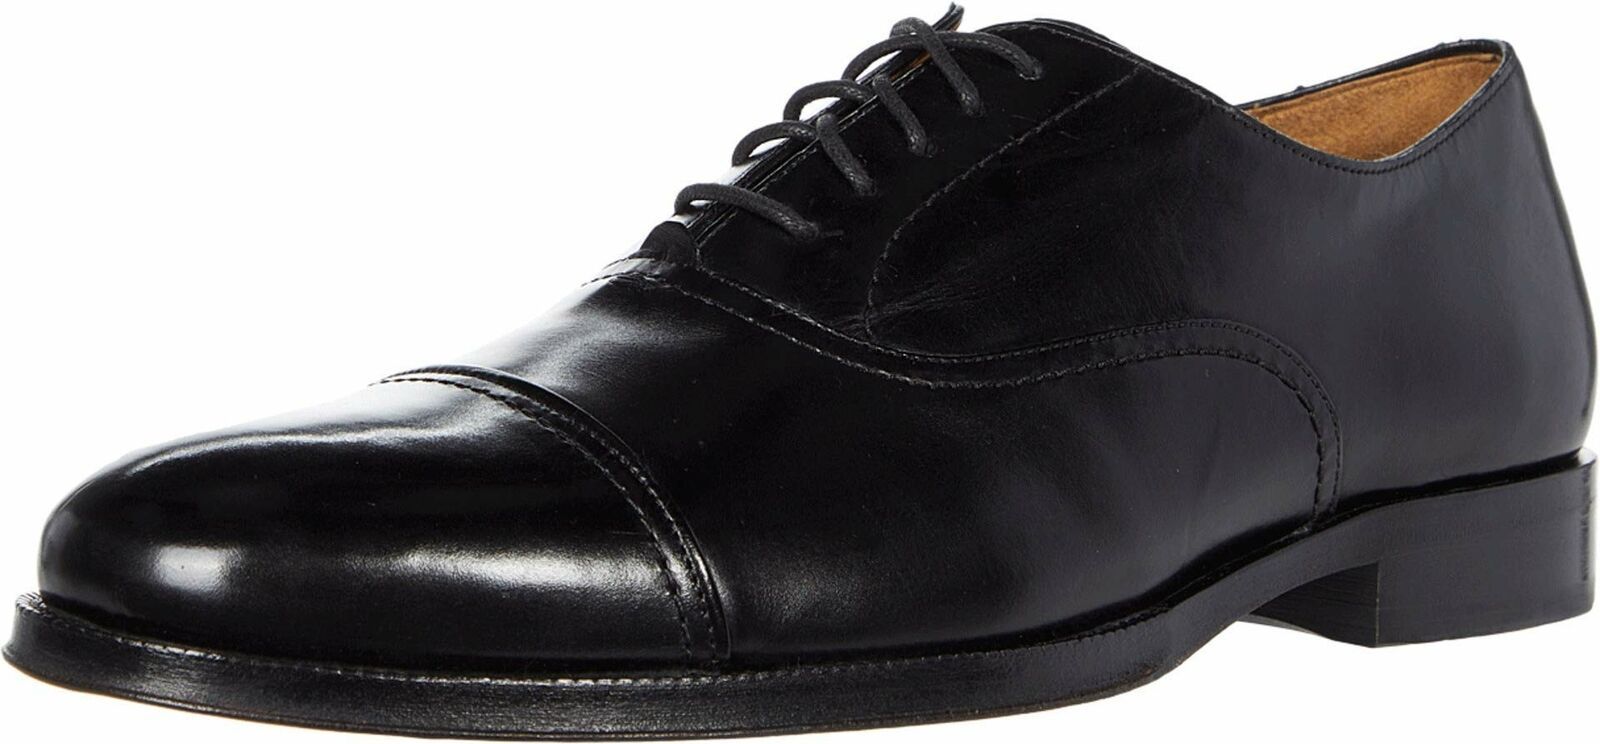 Cole Haan Gramercy Cap Toe Oxford Dress Shoe C31542 Black Size 9D - $141.08